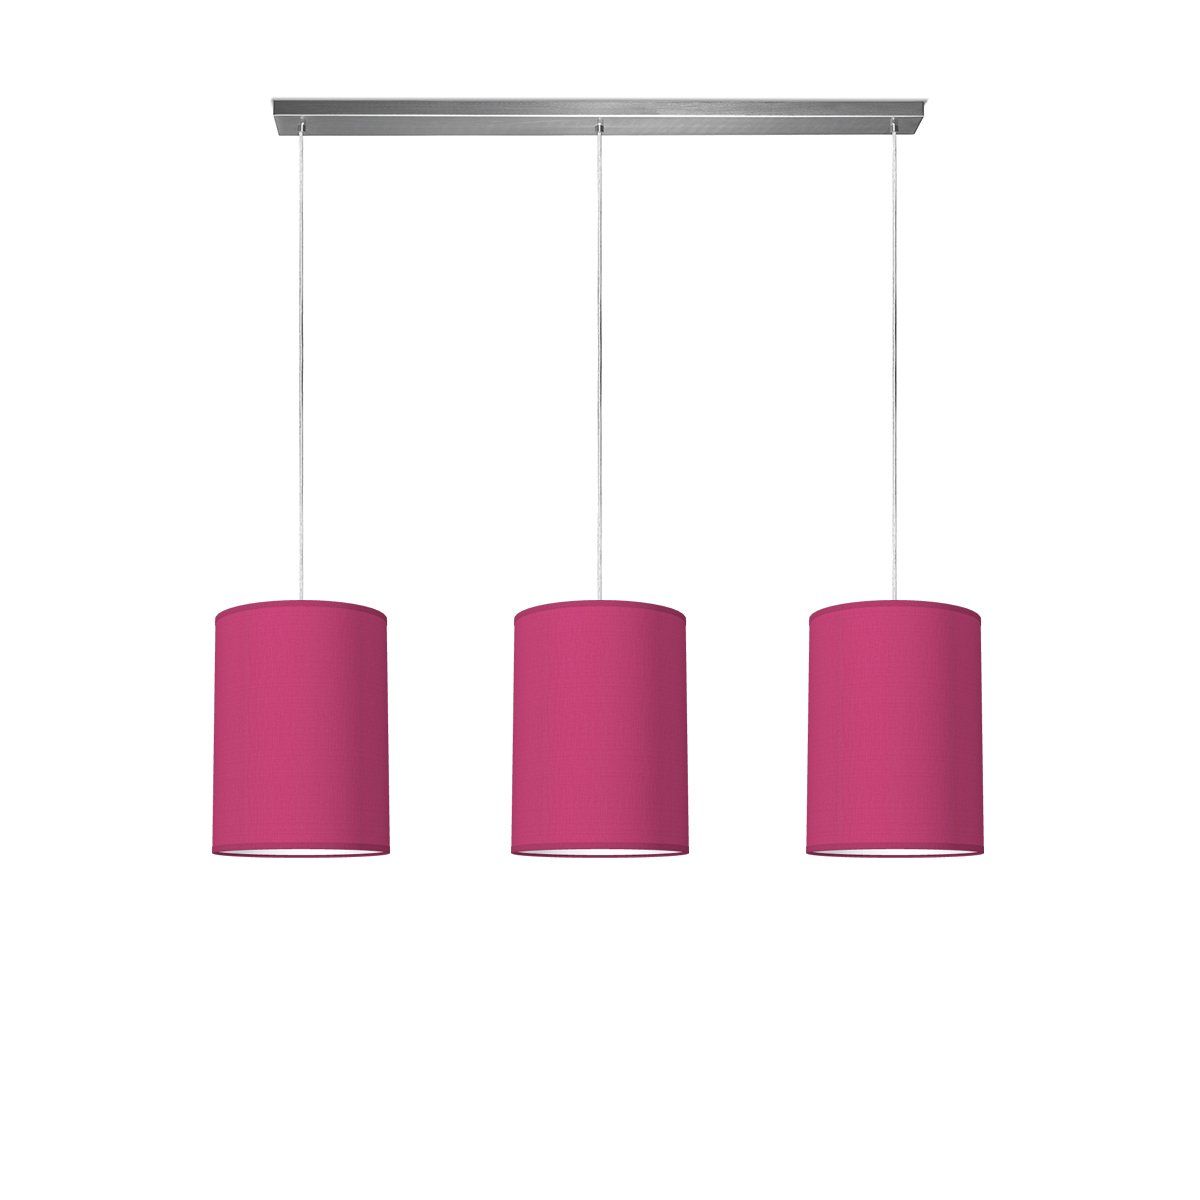 Light depot - hanglamp beam 3 tube Ø 25 cm - roze - Outlet